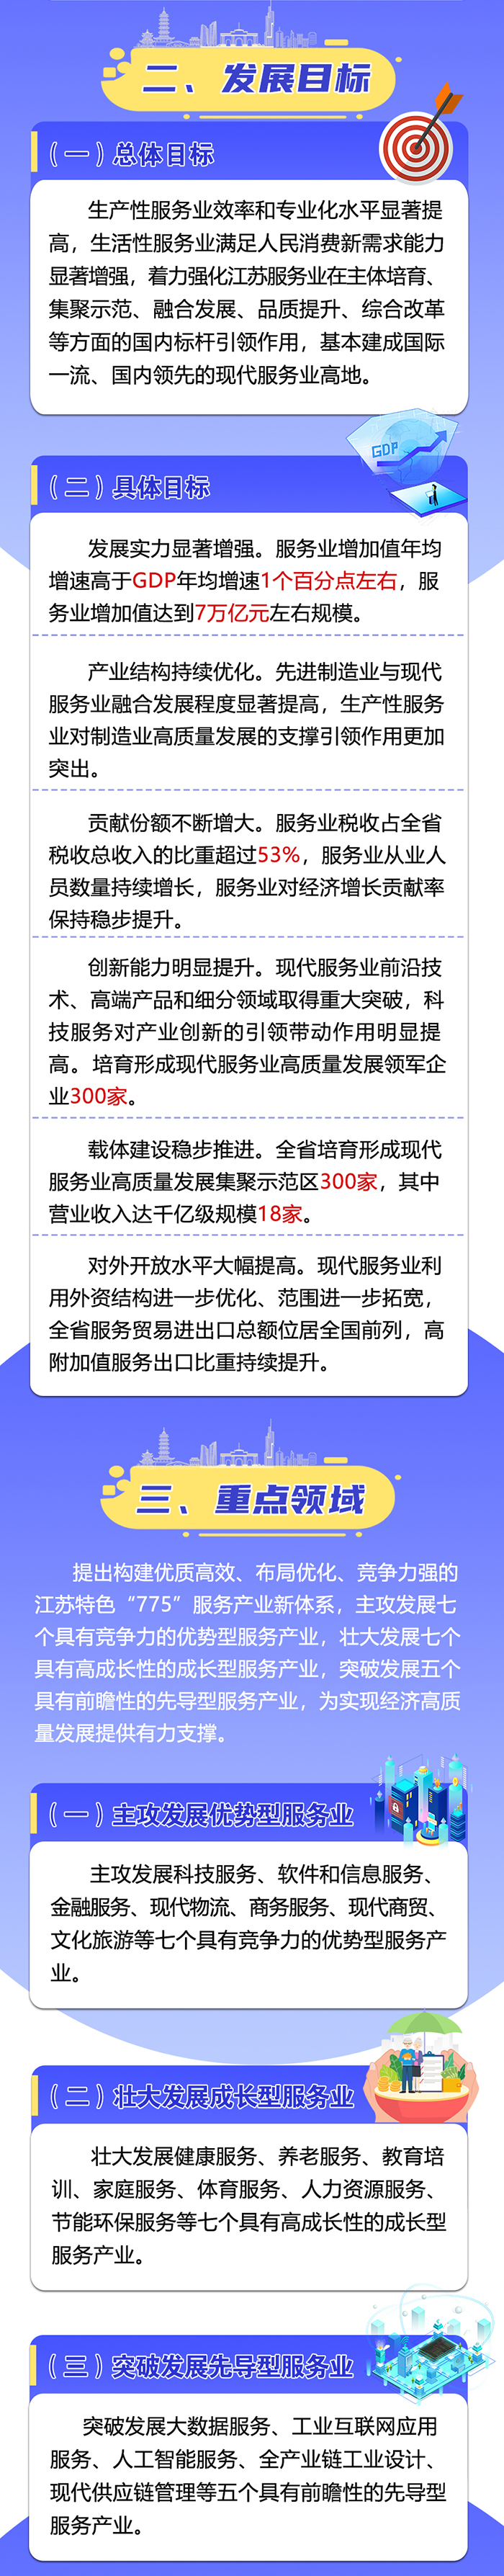 江苏省“十四五”现代服务业发展规划